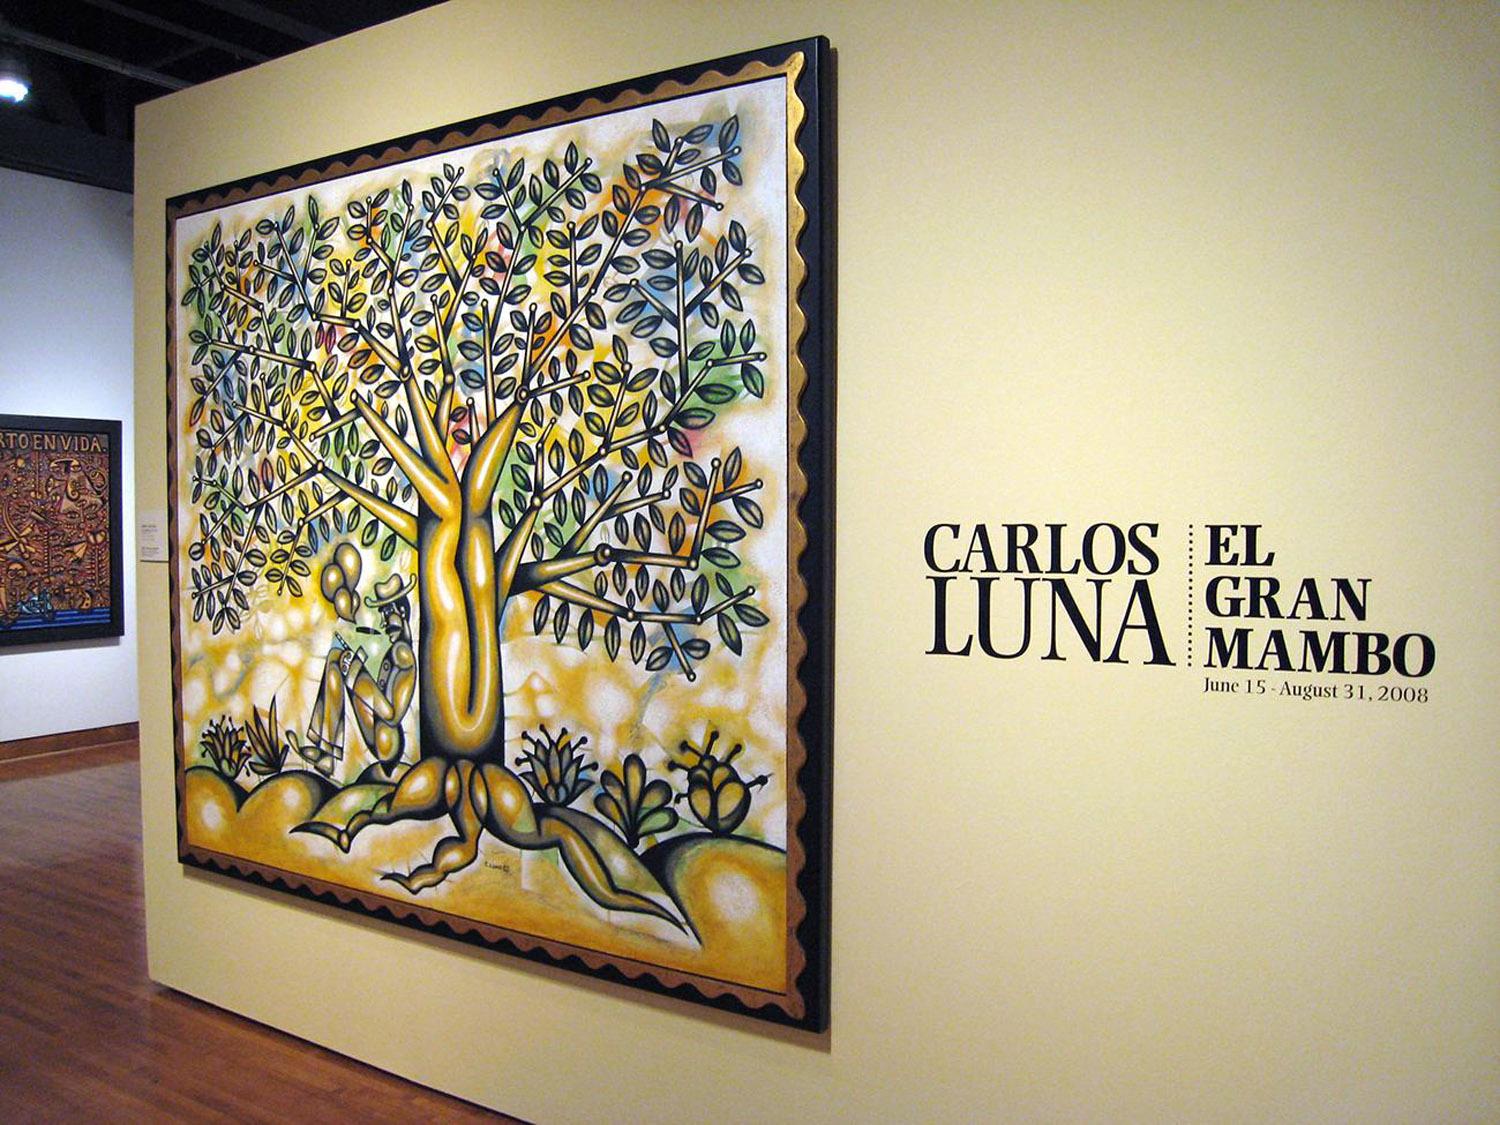 Carlos Luna: El Gran Mambo; Museum of Latin American Art – Molaa, Long Beach, CA, 2008